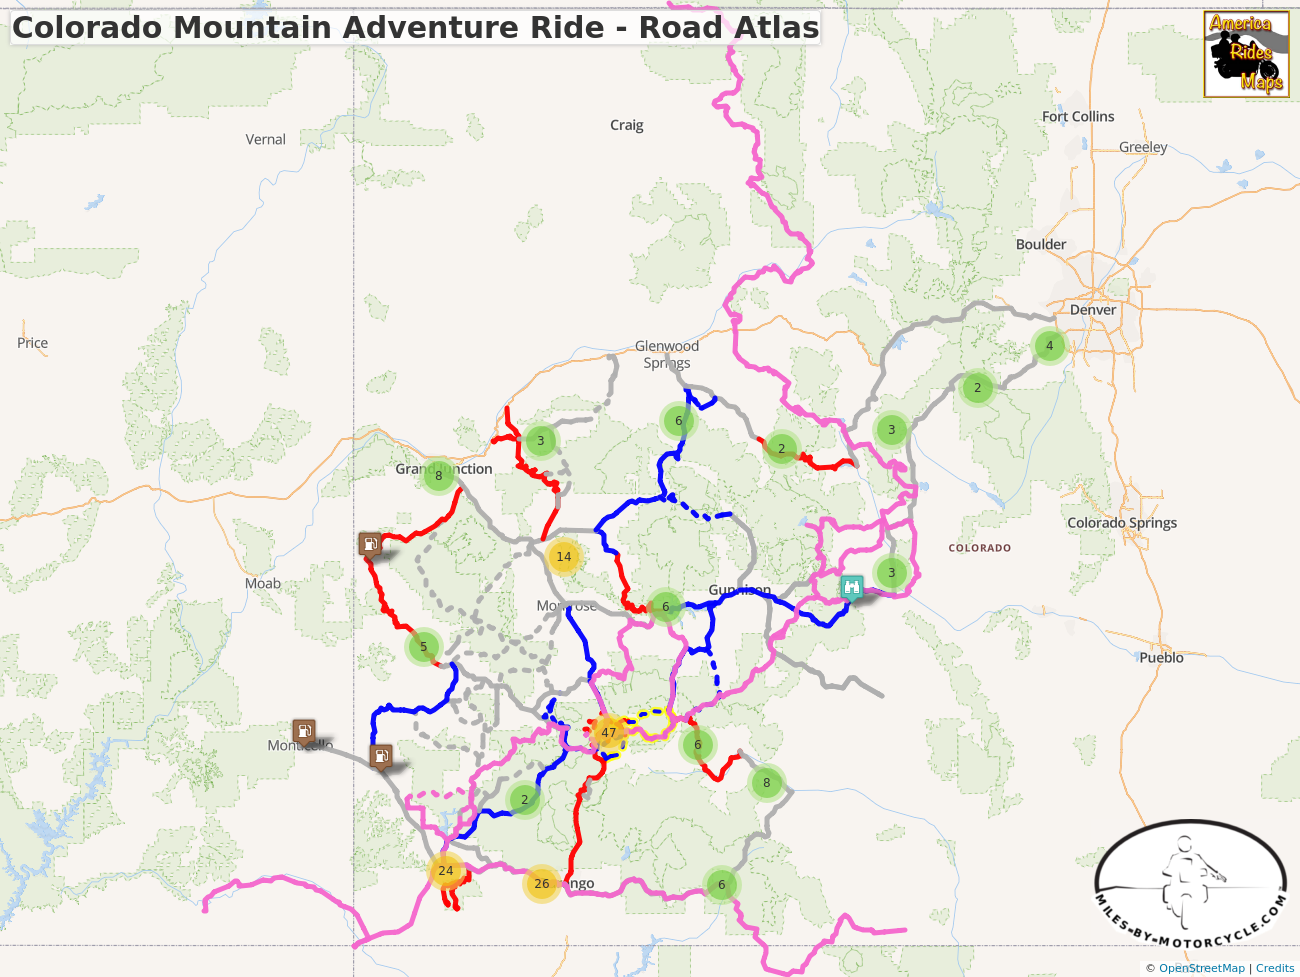 Colorado Mountain Adventure Ride - Road Atlas